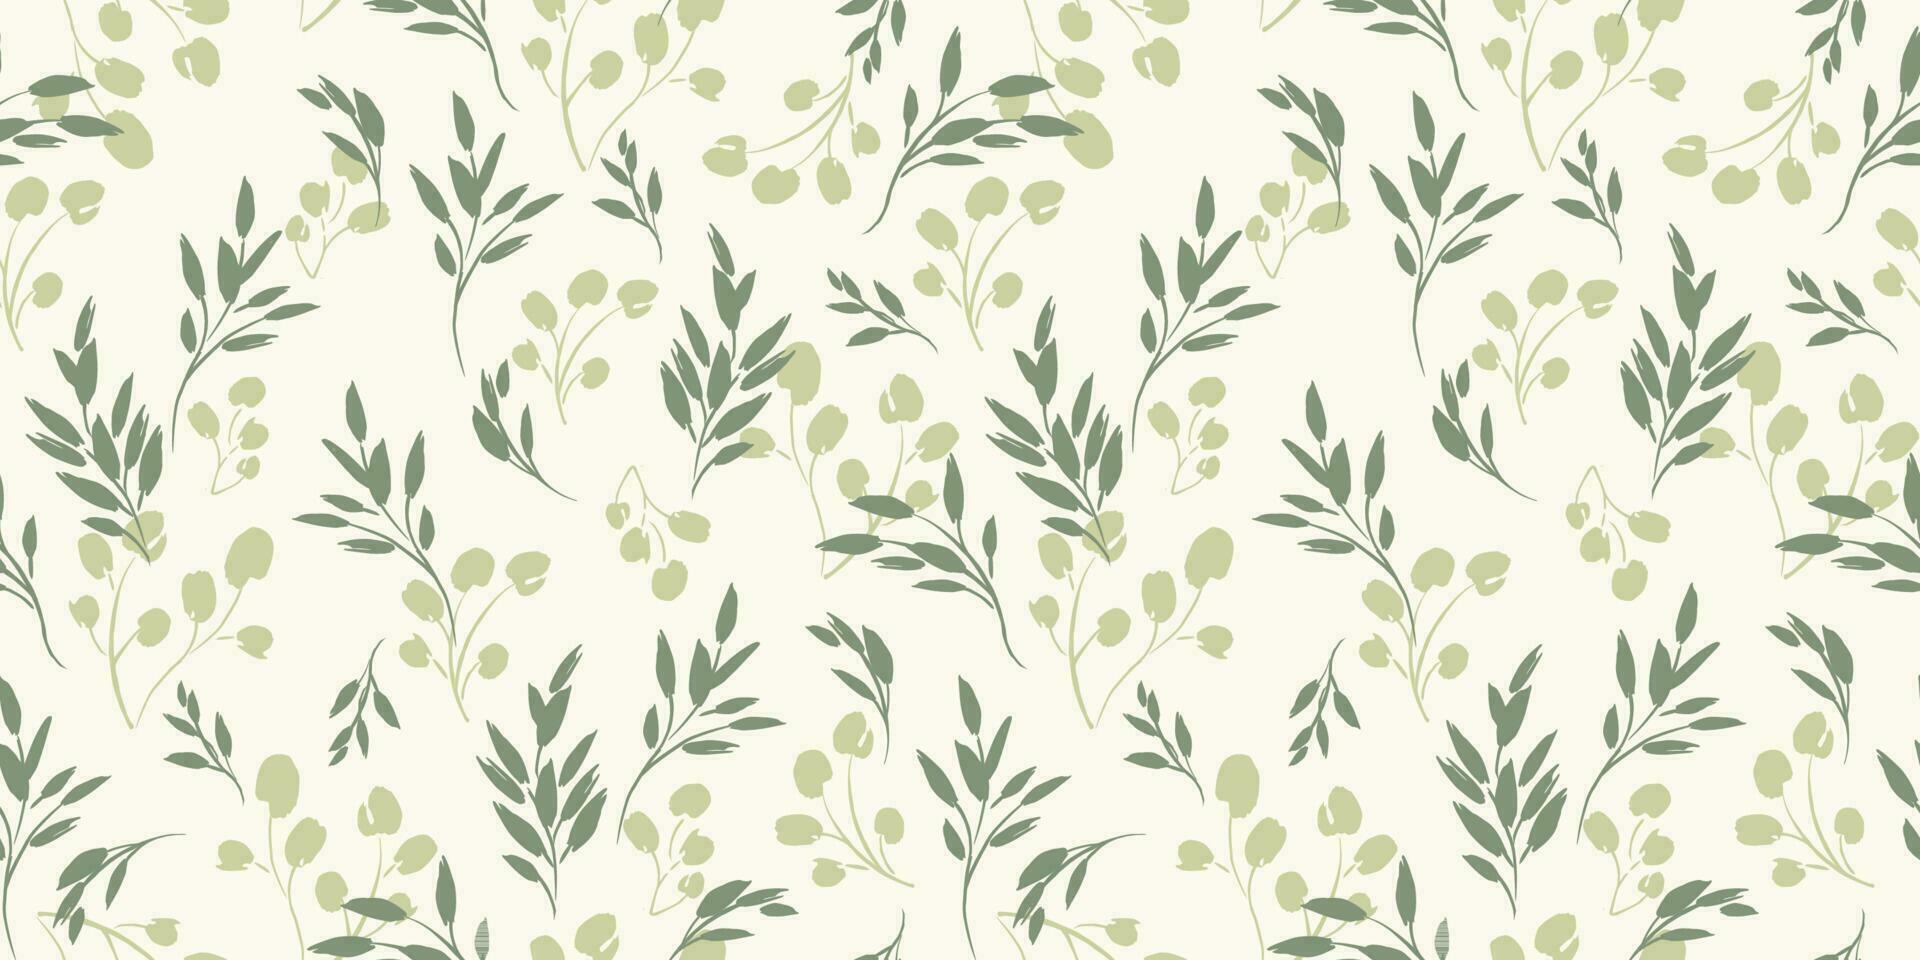 bloemen naadloos patroon met gras en bladeren. vector ontwerp voor papier, omslag, kleding stof, interieur decor en andere gebruik